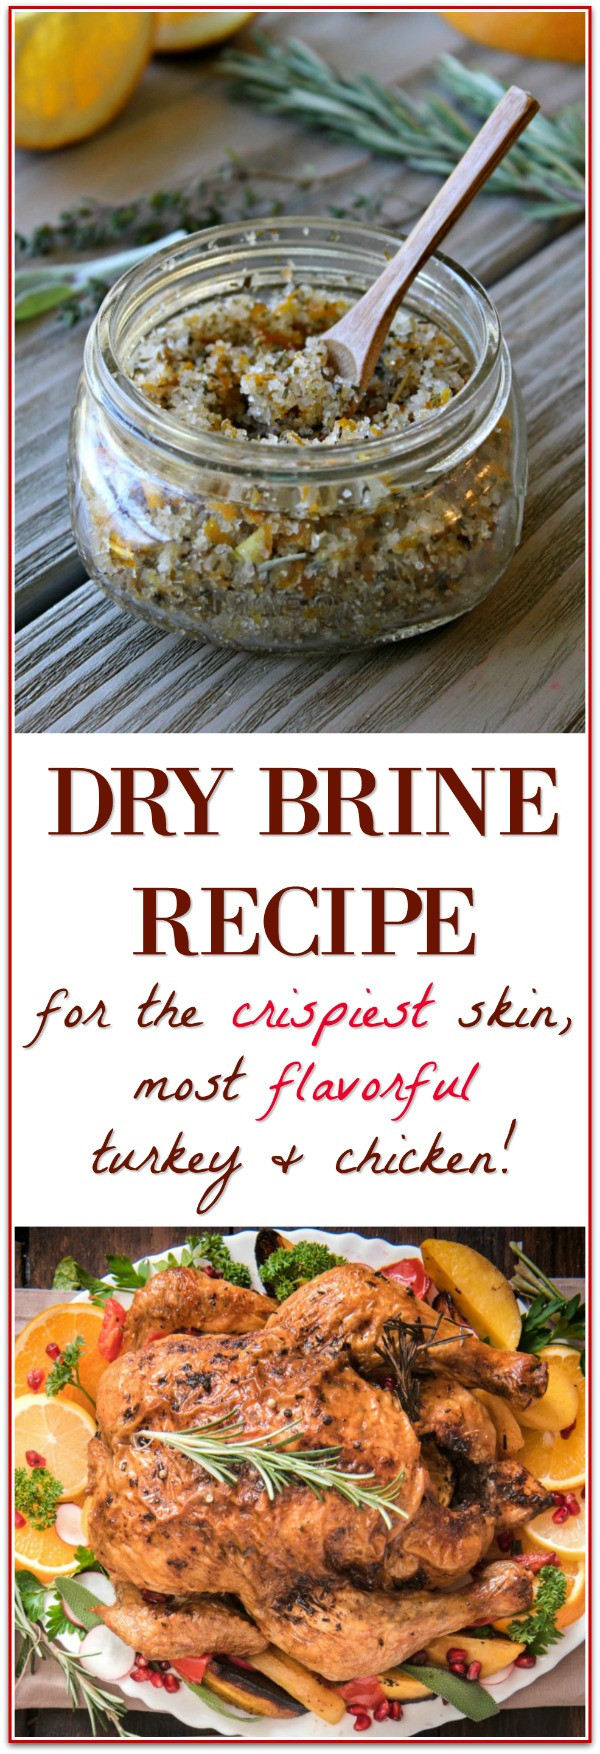 Best Dry Brine For Turkey
 Dry Brine Turkey for the Best Thanksgiving Turkey